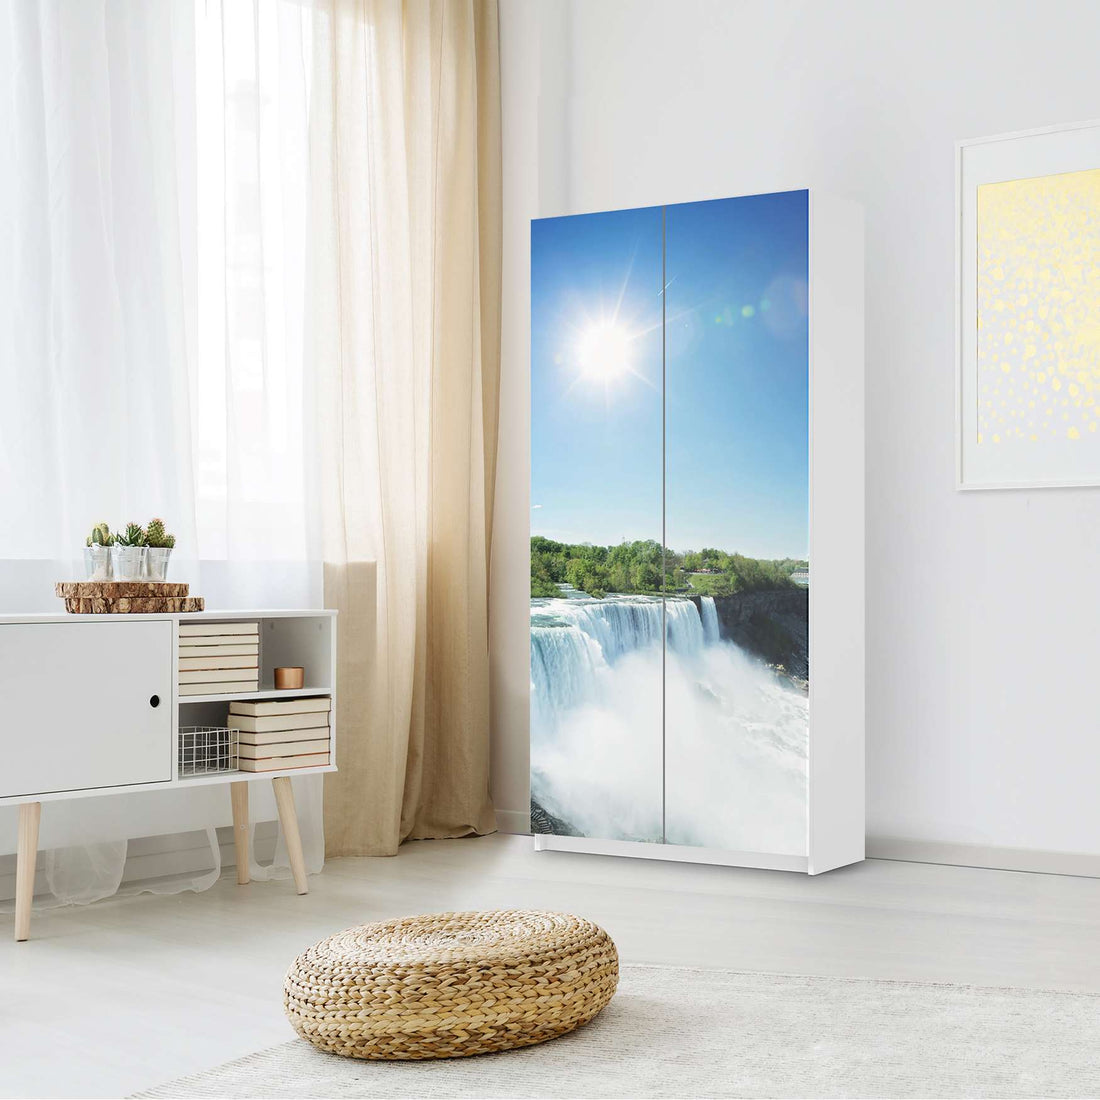 Klebefolie für Möbel Niagara Falls - IKEA Pax Schrank 201 cm Höhe - 2 Türen - Schlafzimmer